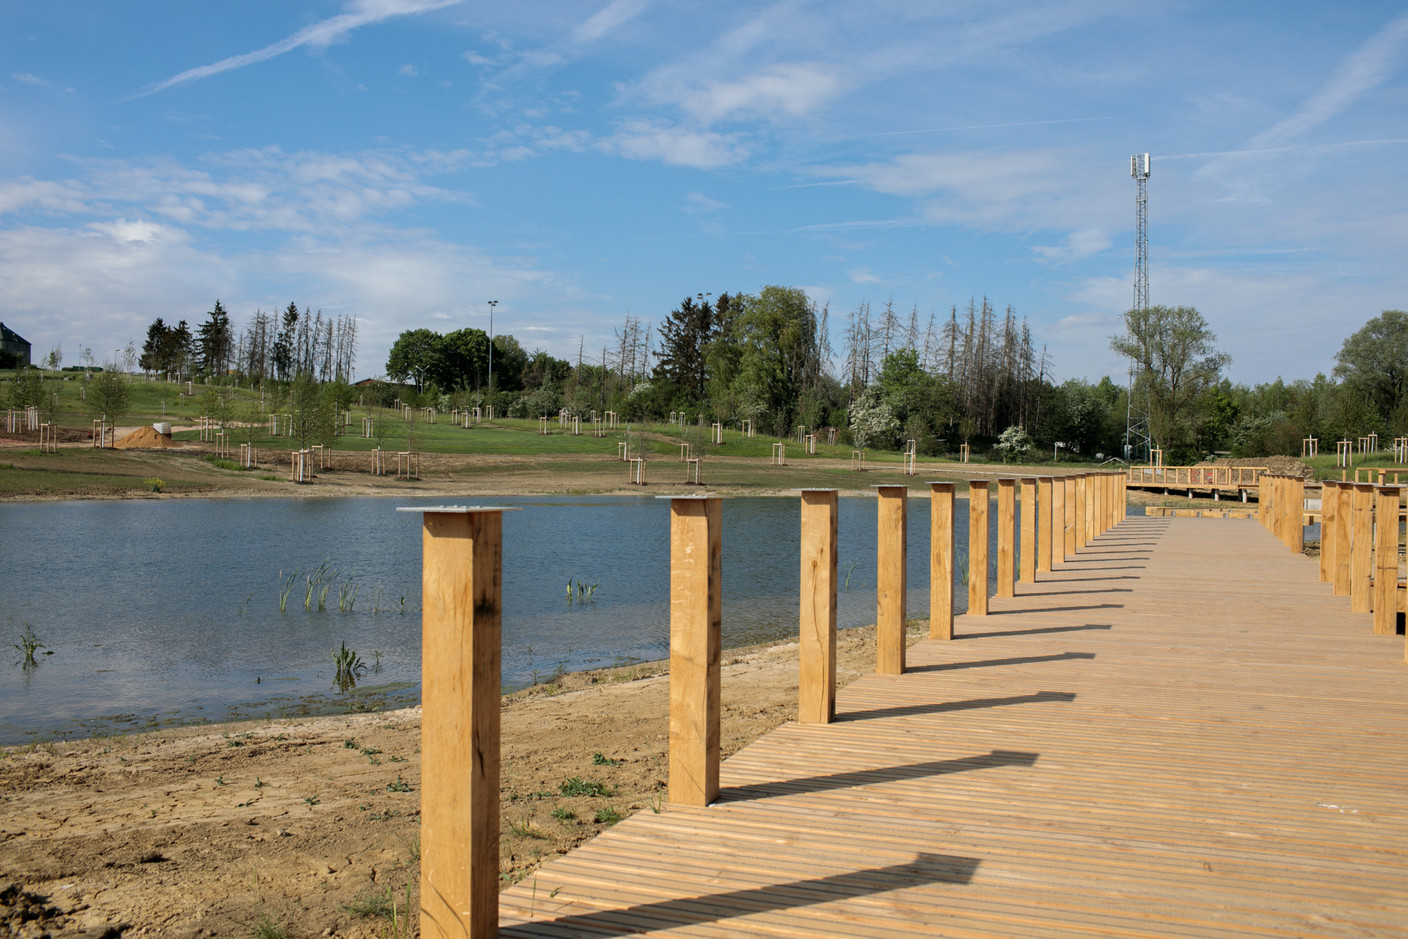 Au bord de l’étang, un chemin en bois est prévu. (Photo: Matic Zorman / Maison Moderne)